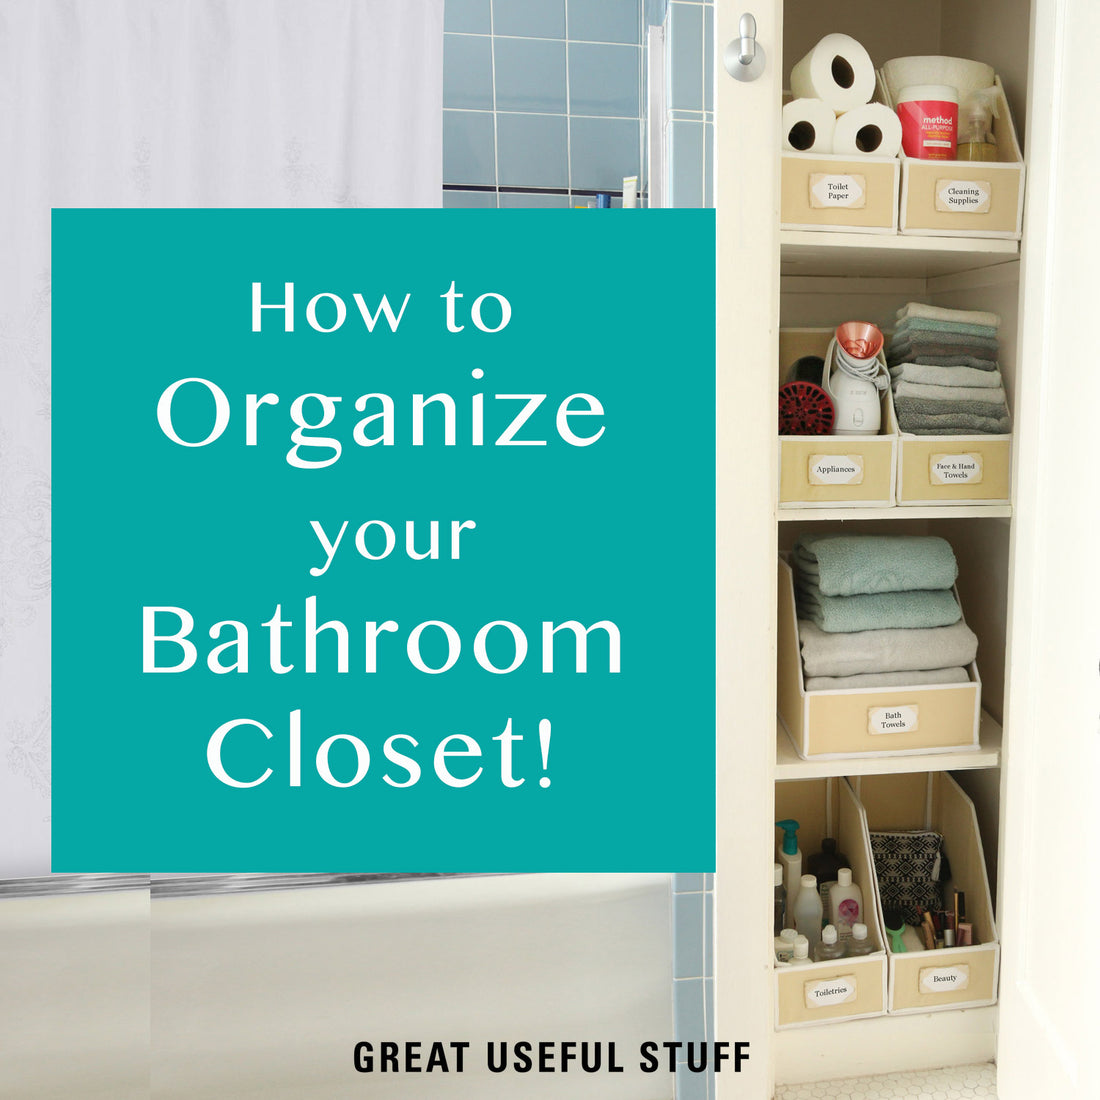 How to Organize your Bathroom Closet